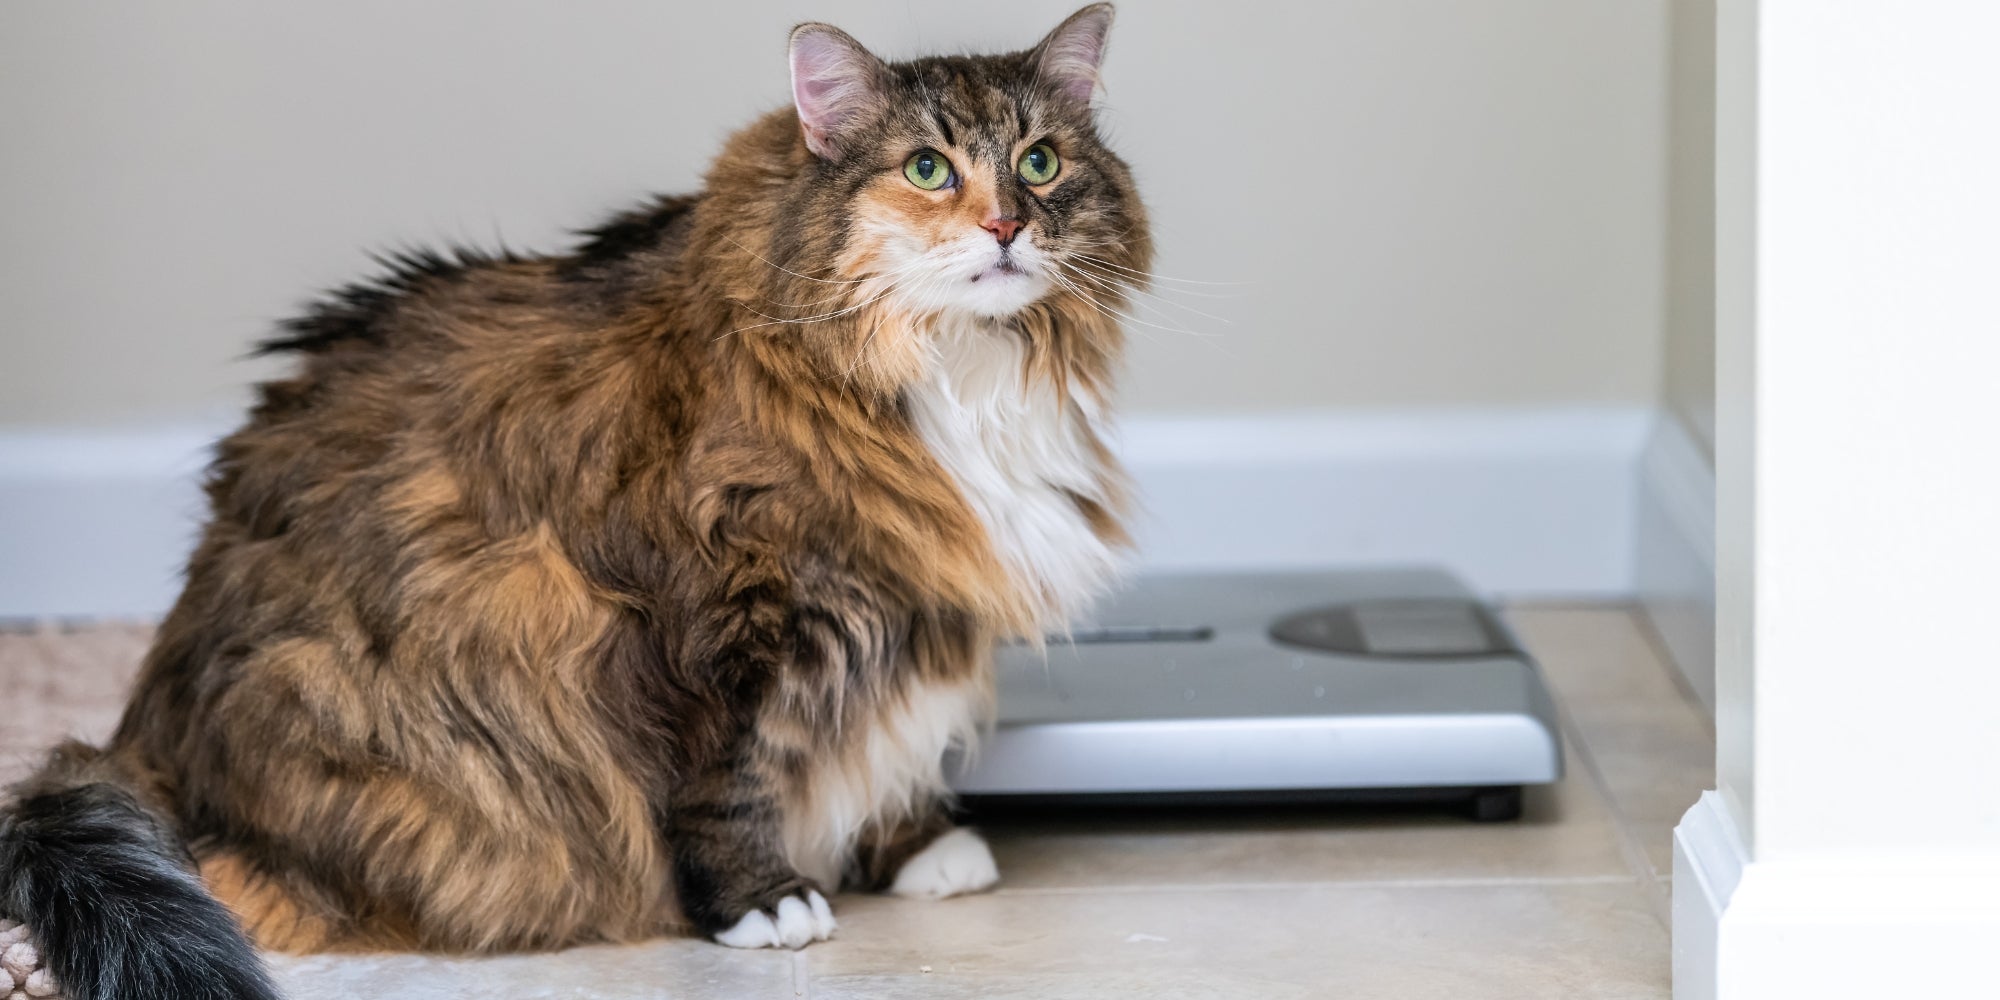 Calico maine coon gato mirando hacia arriba en el cuarto de baño en casa por la escala de peso con sobrepeso obesos felino grasa